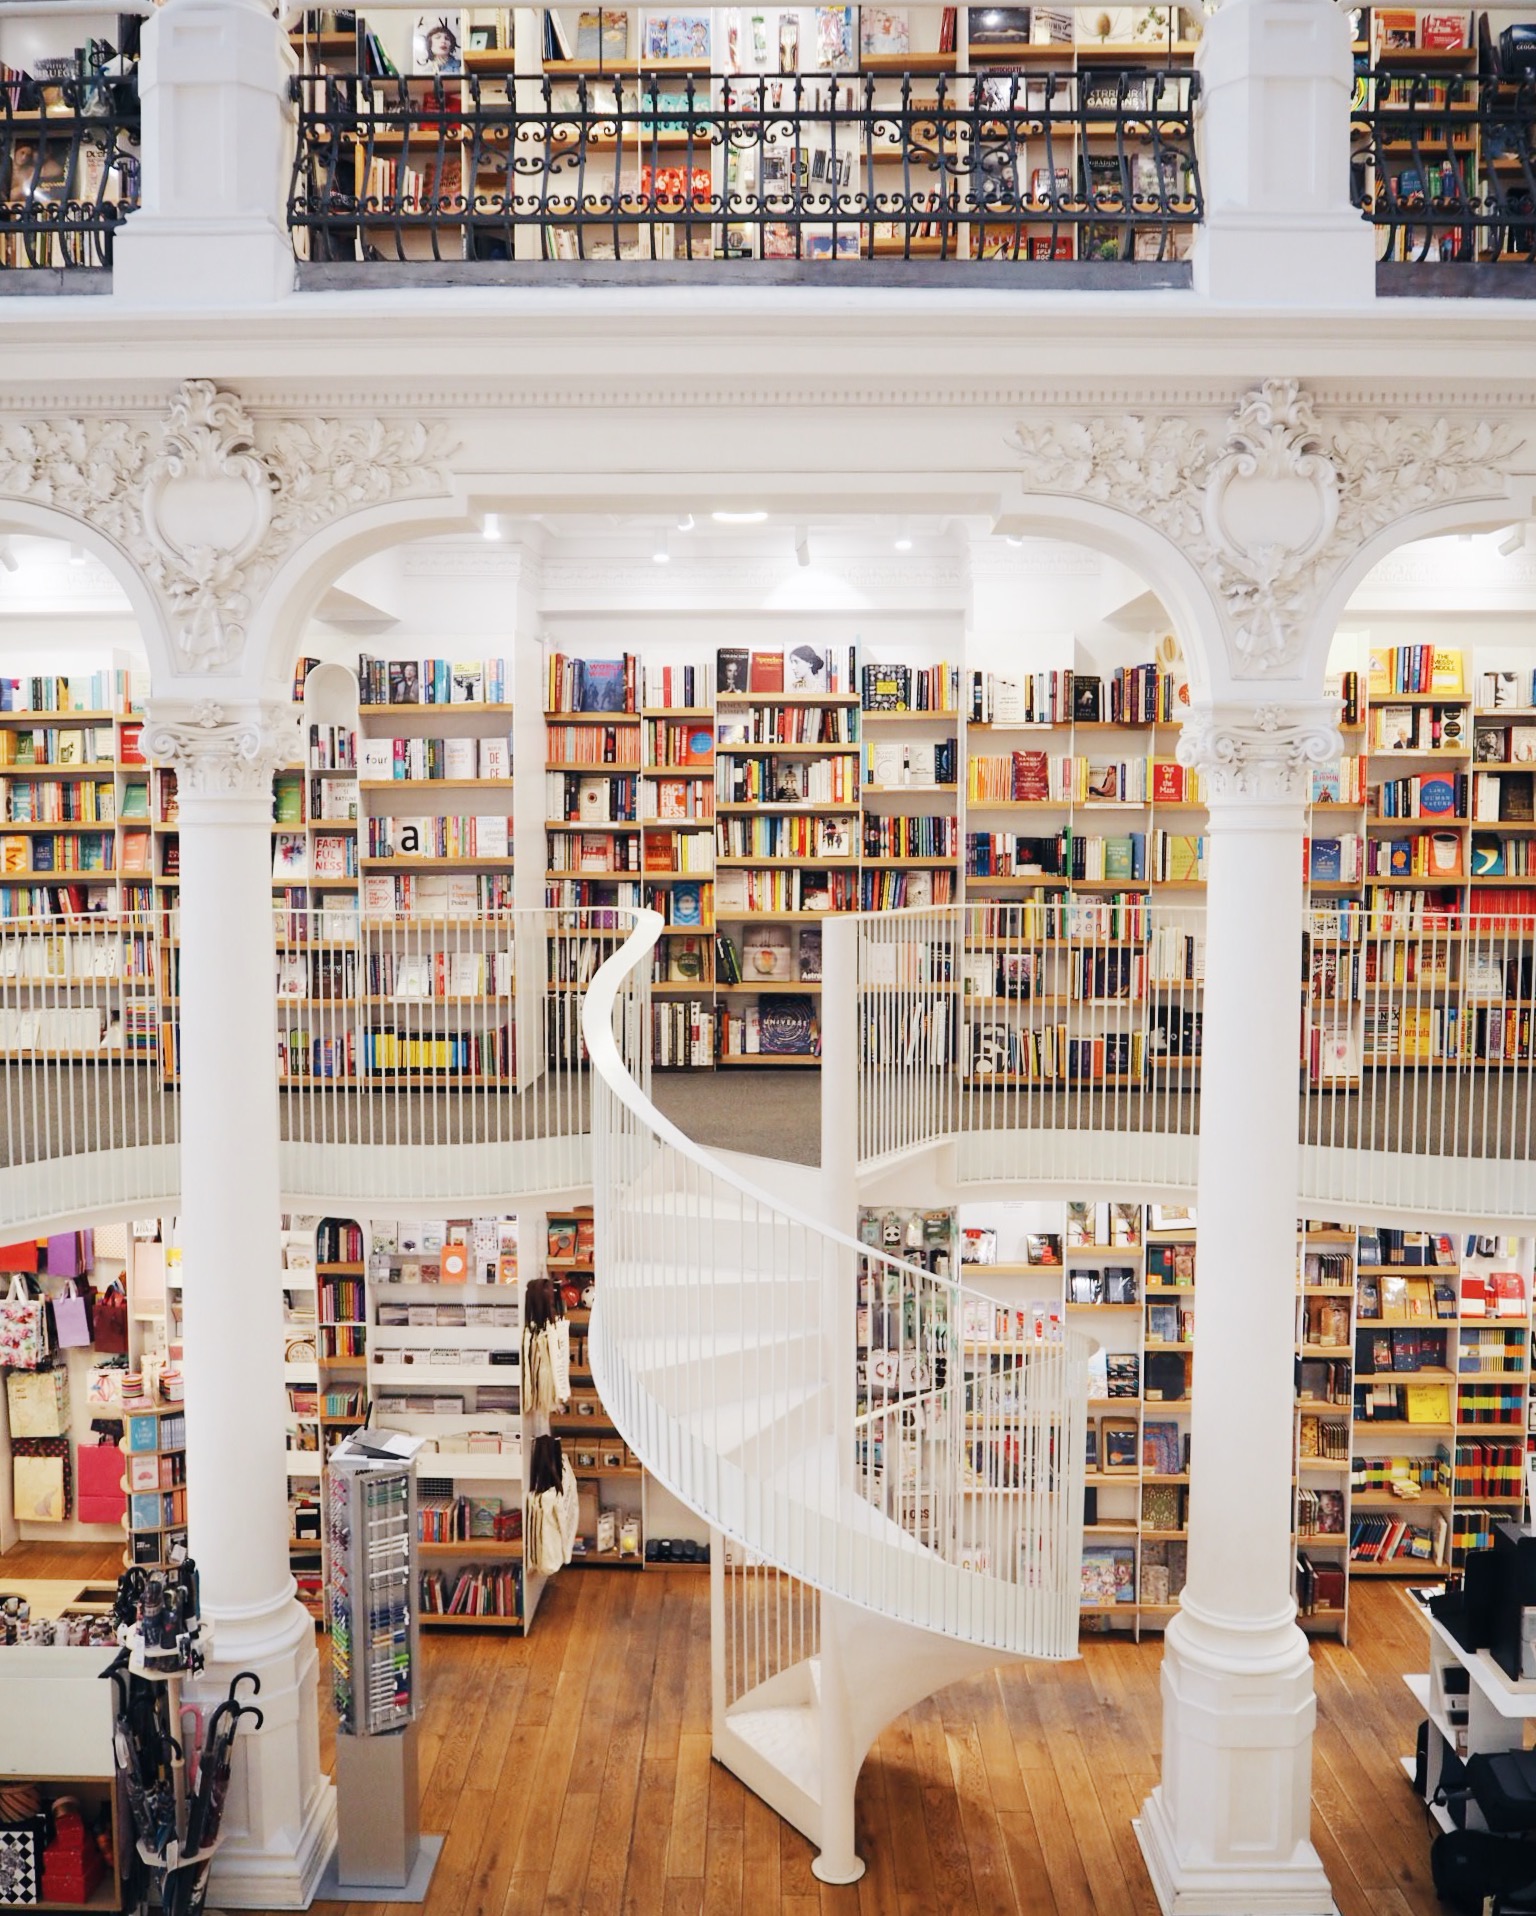 Cărturești Carusel bookstore in Bucharest, Romania